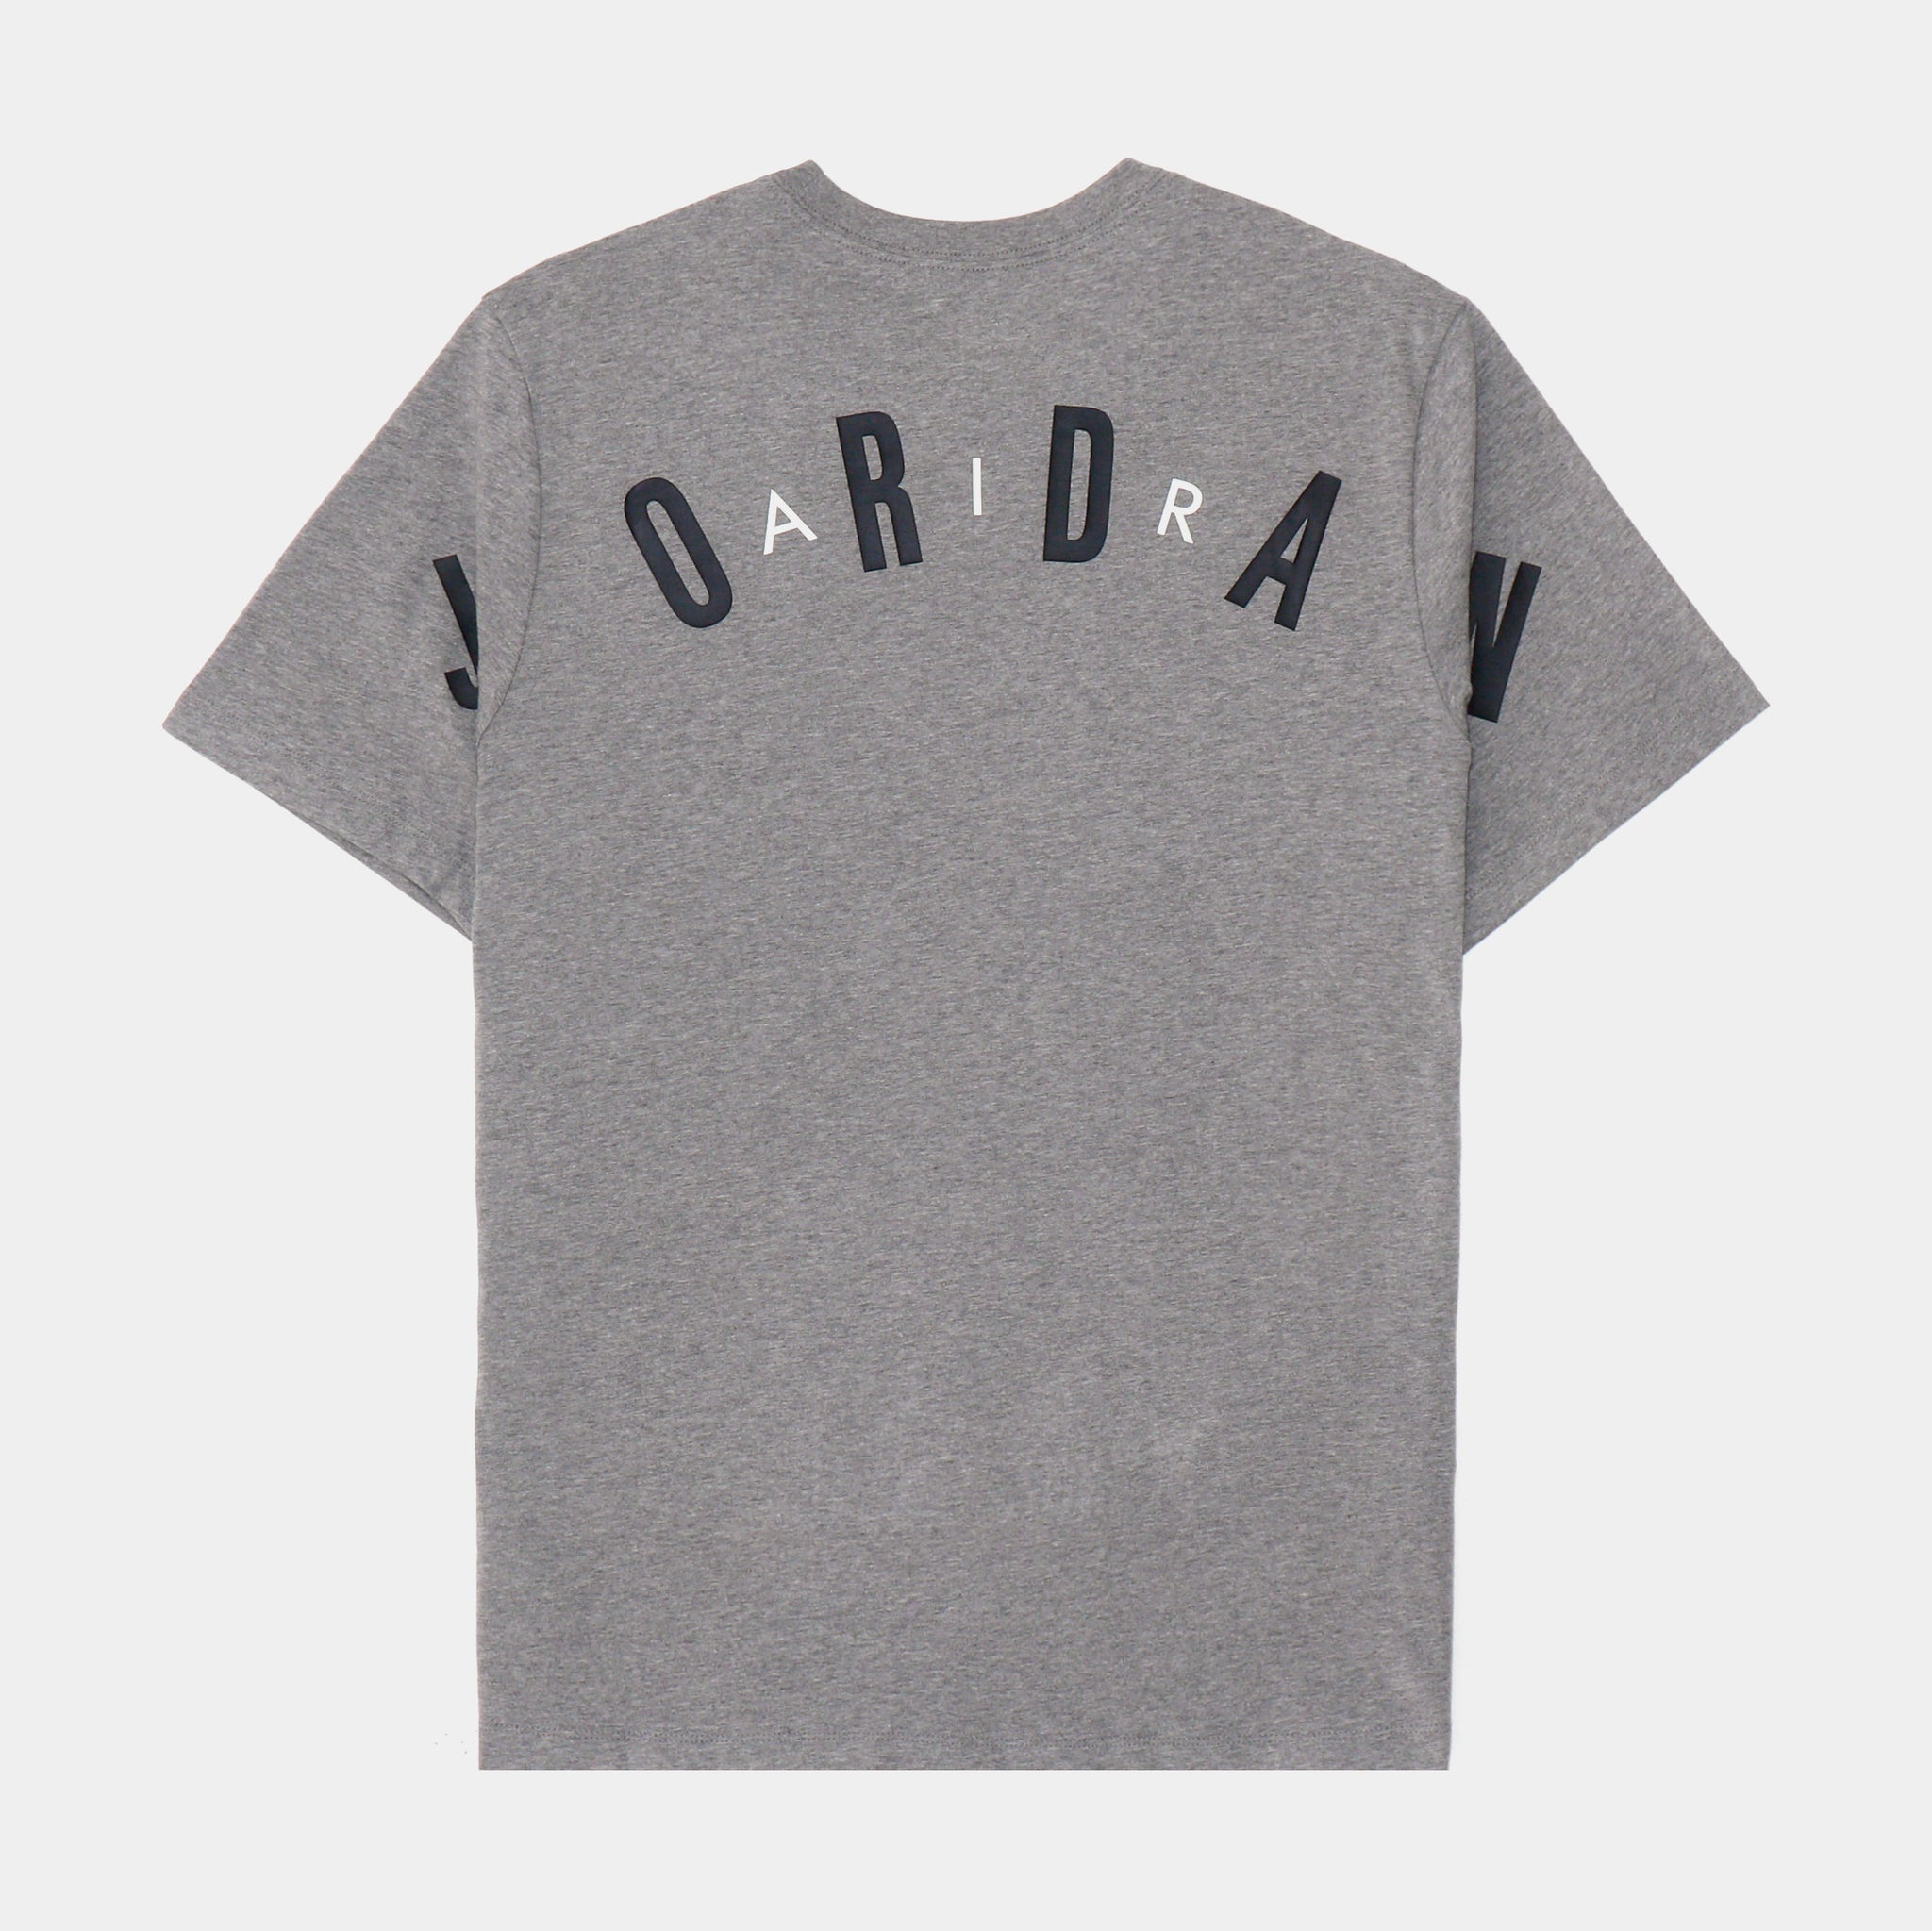 Mens Jordan Tops & T-Shirts.